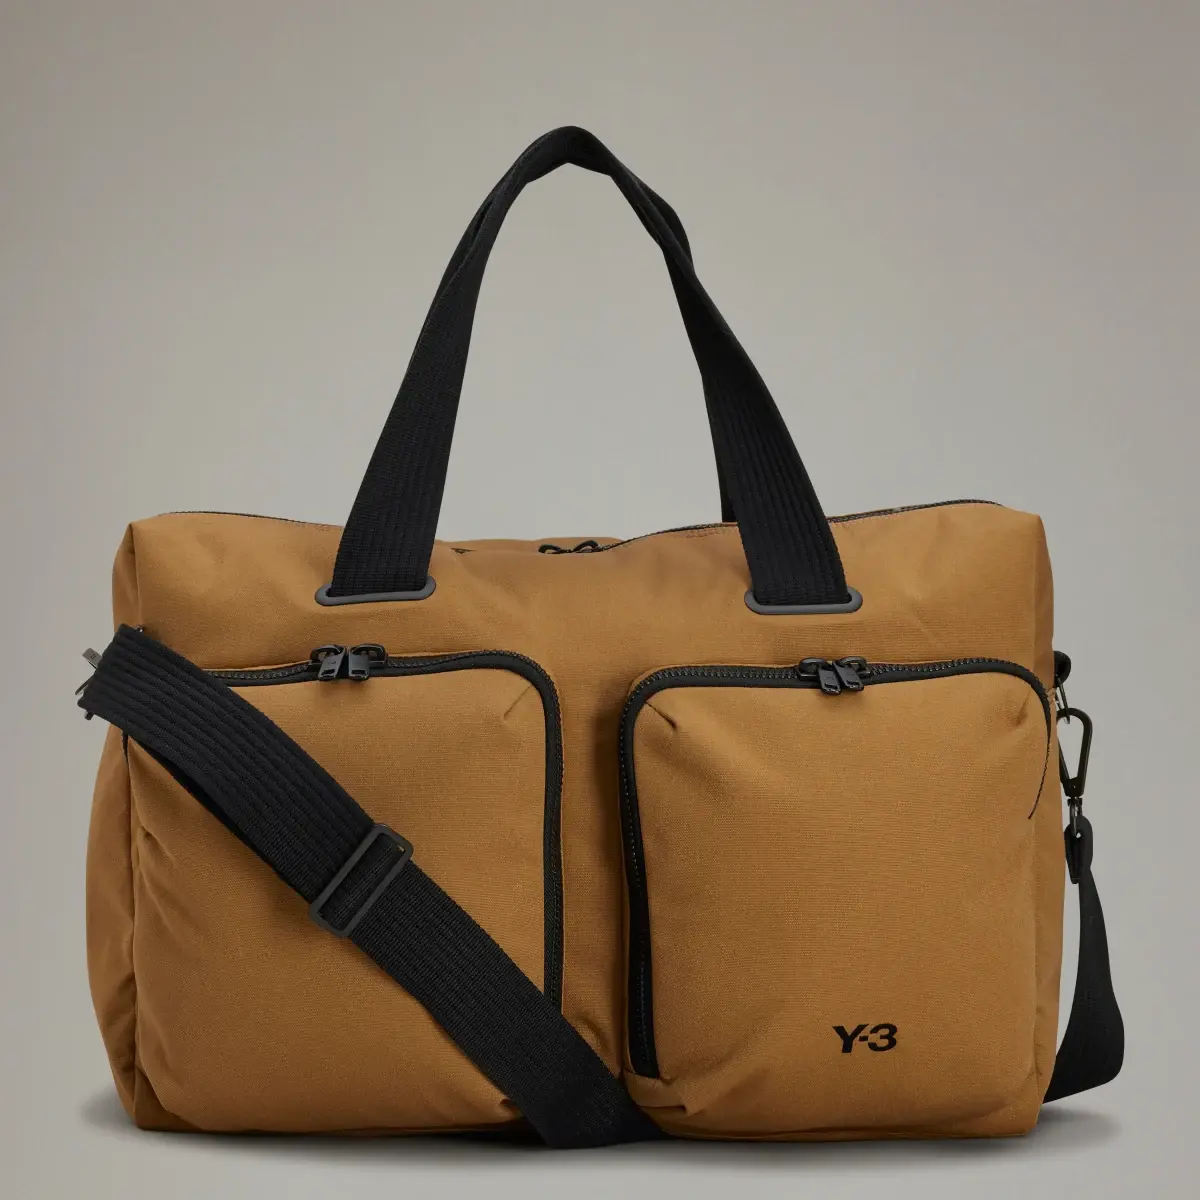 Adidas Y-3 Travel Bag. 1